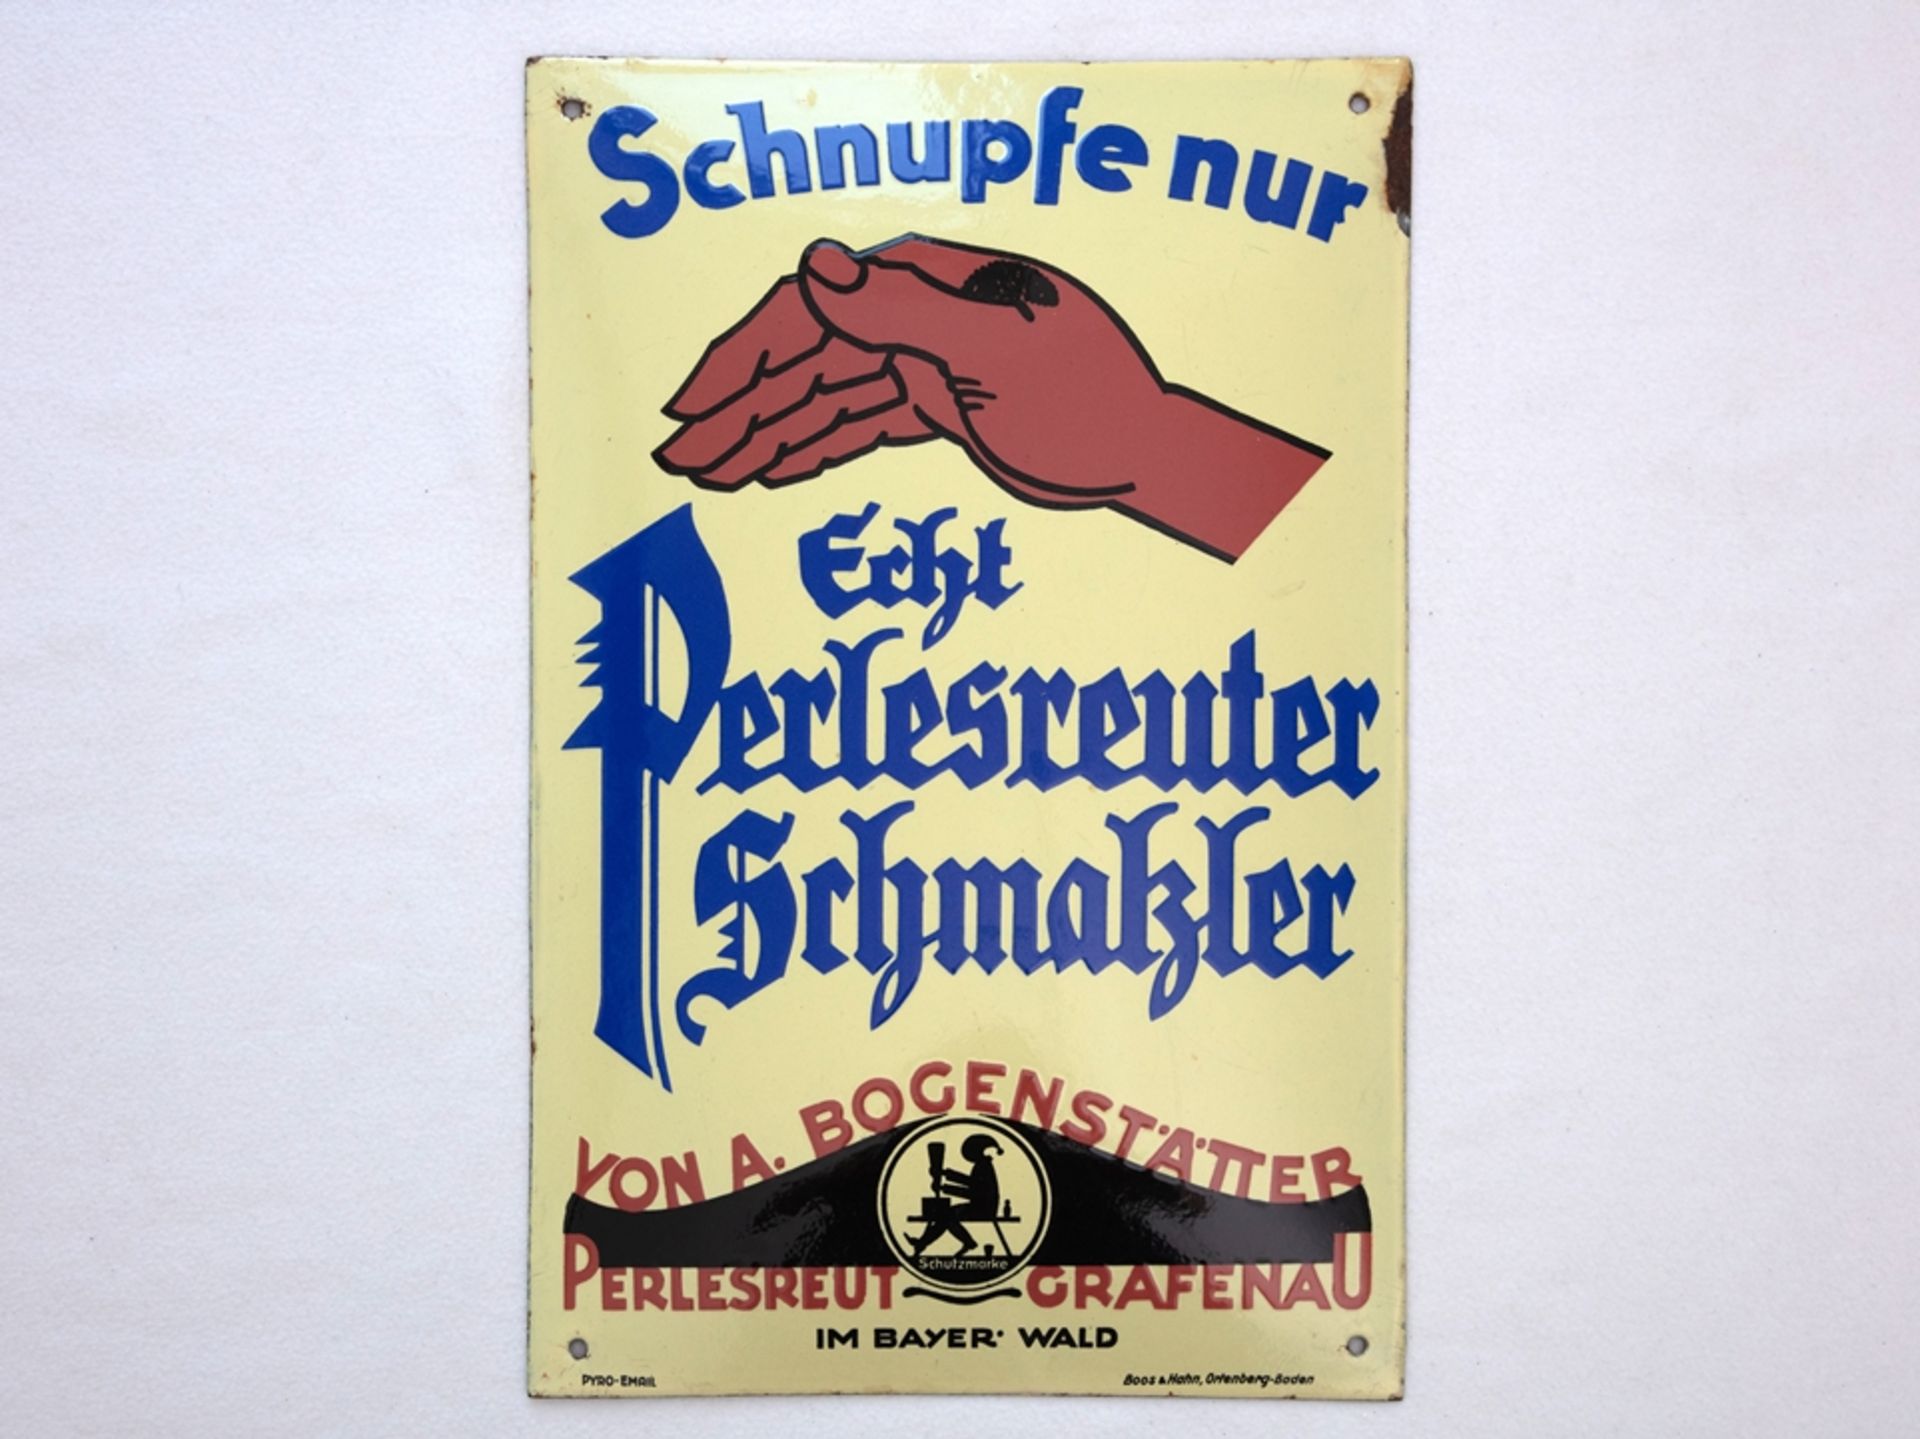 Enamel sign Schnupfe only Perlesreuter Schmalzler, Perlesreut/Grafenau, around 1930 - Image 7 of 7